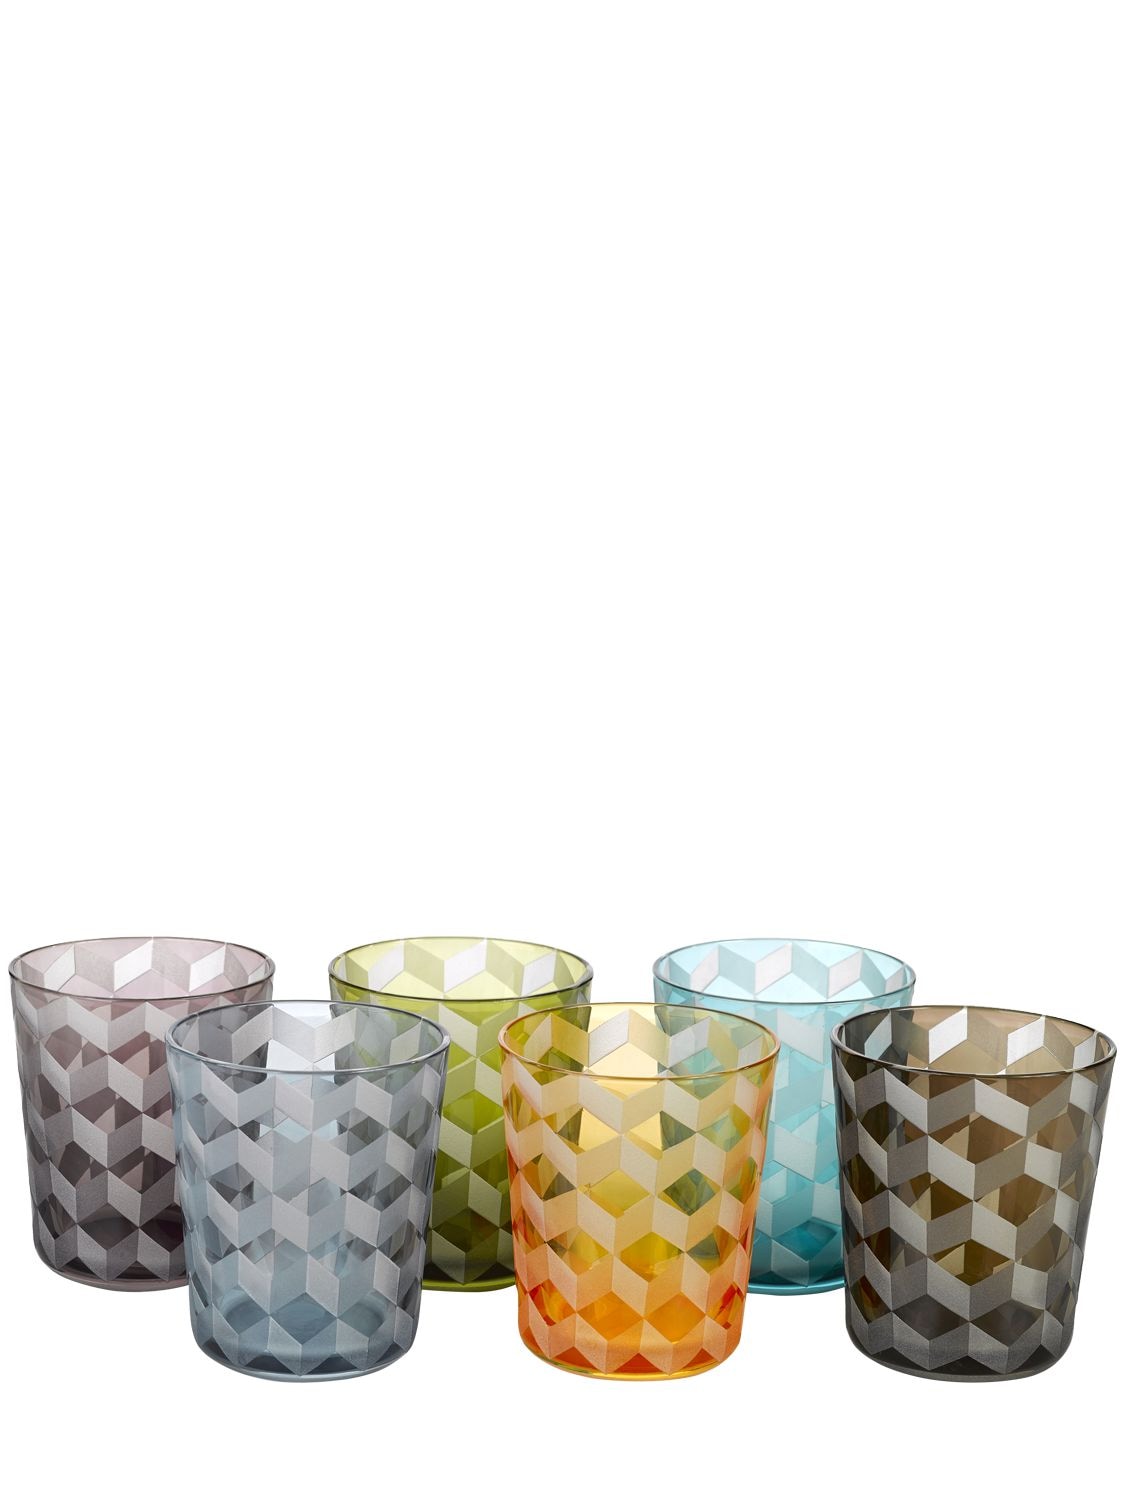 Polspotten 彩色平底玻璃杯6个套装 In Multicolor